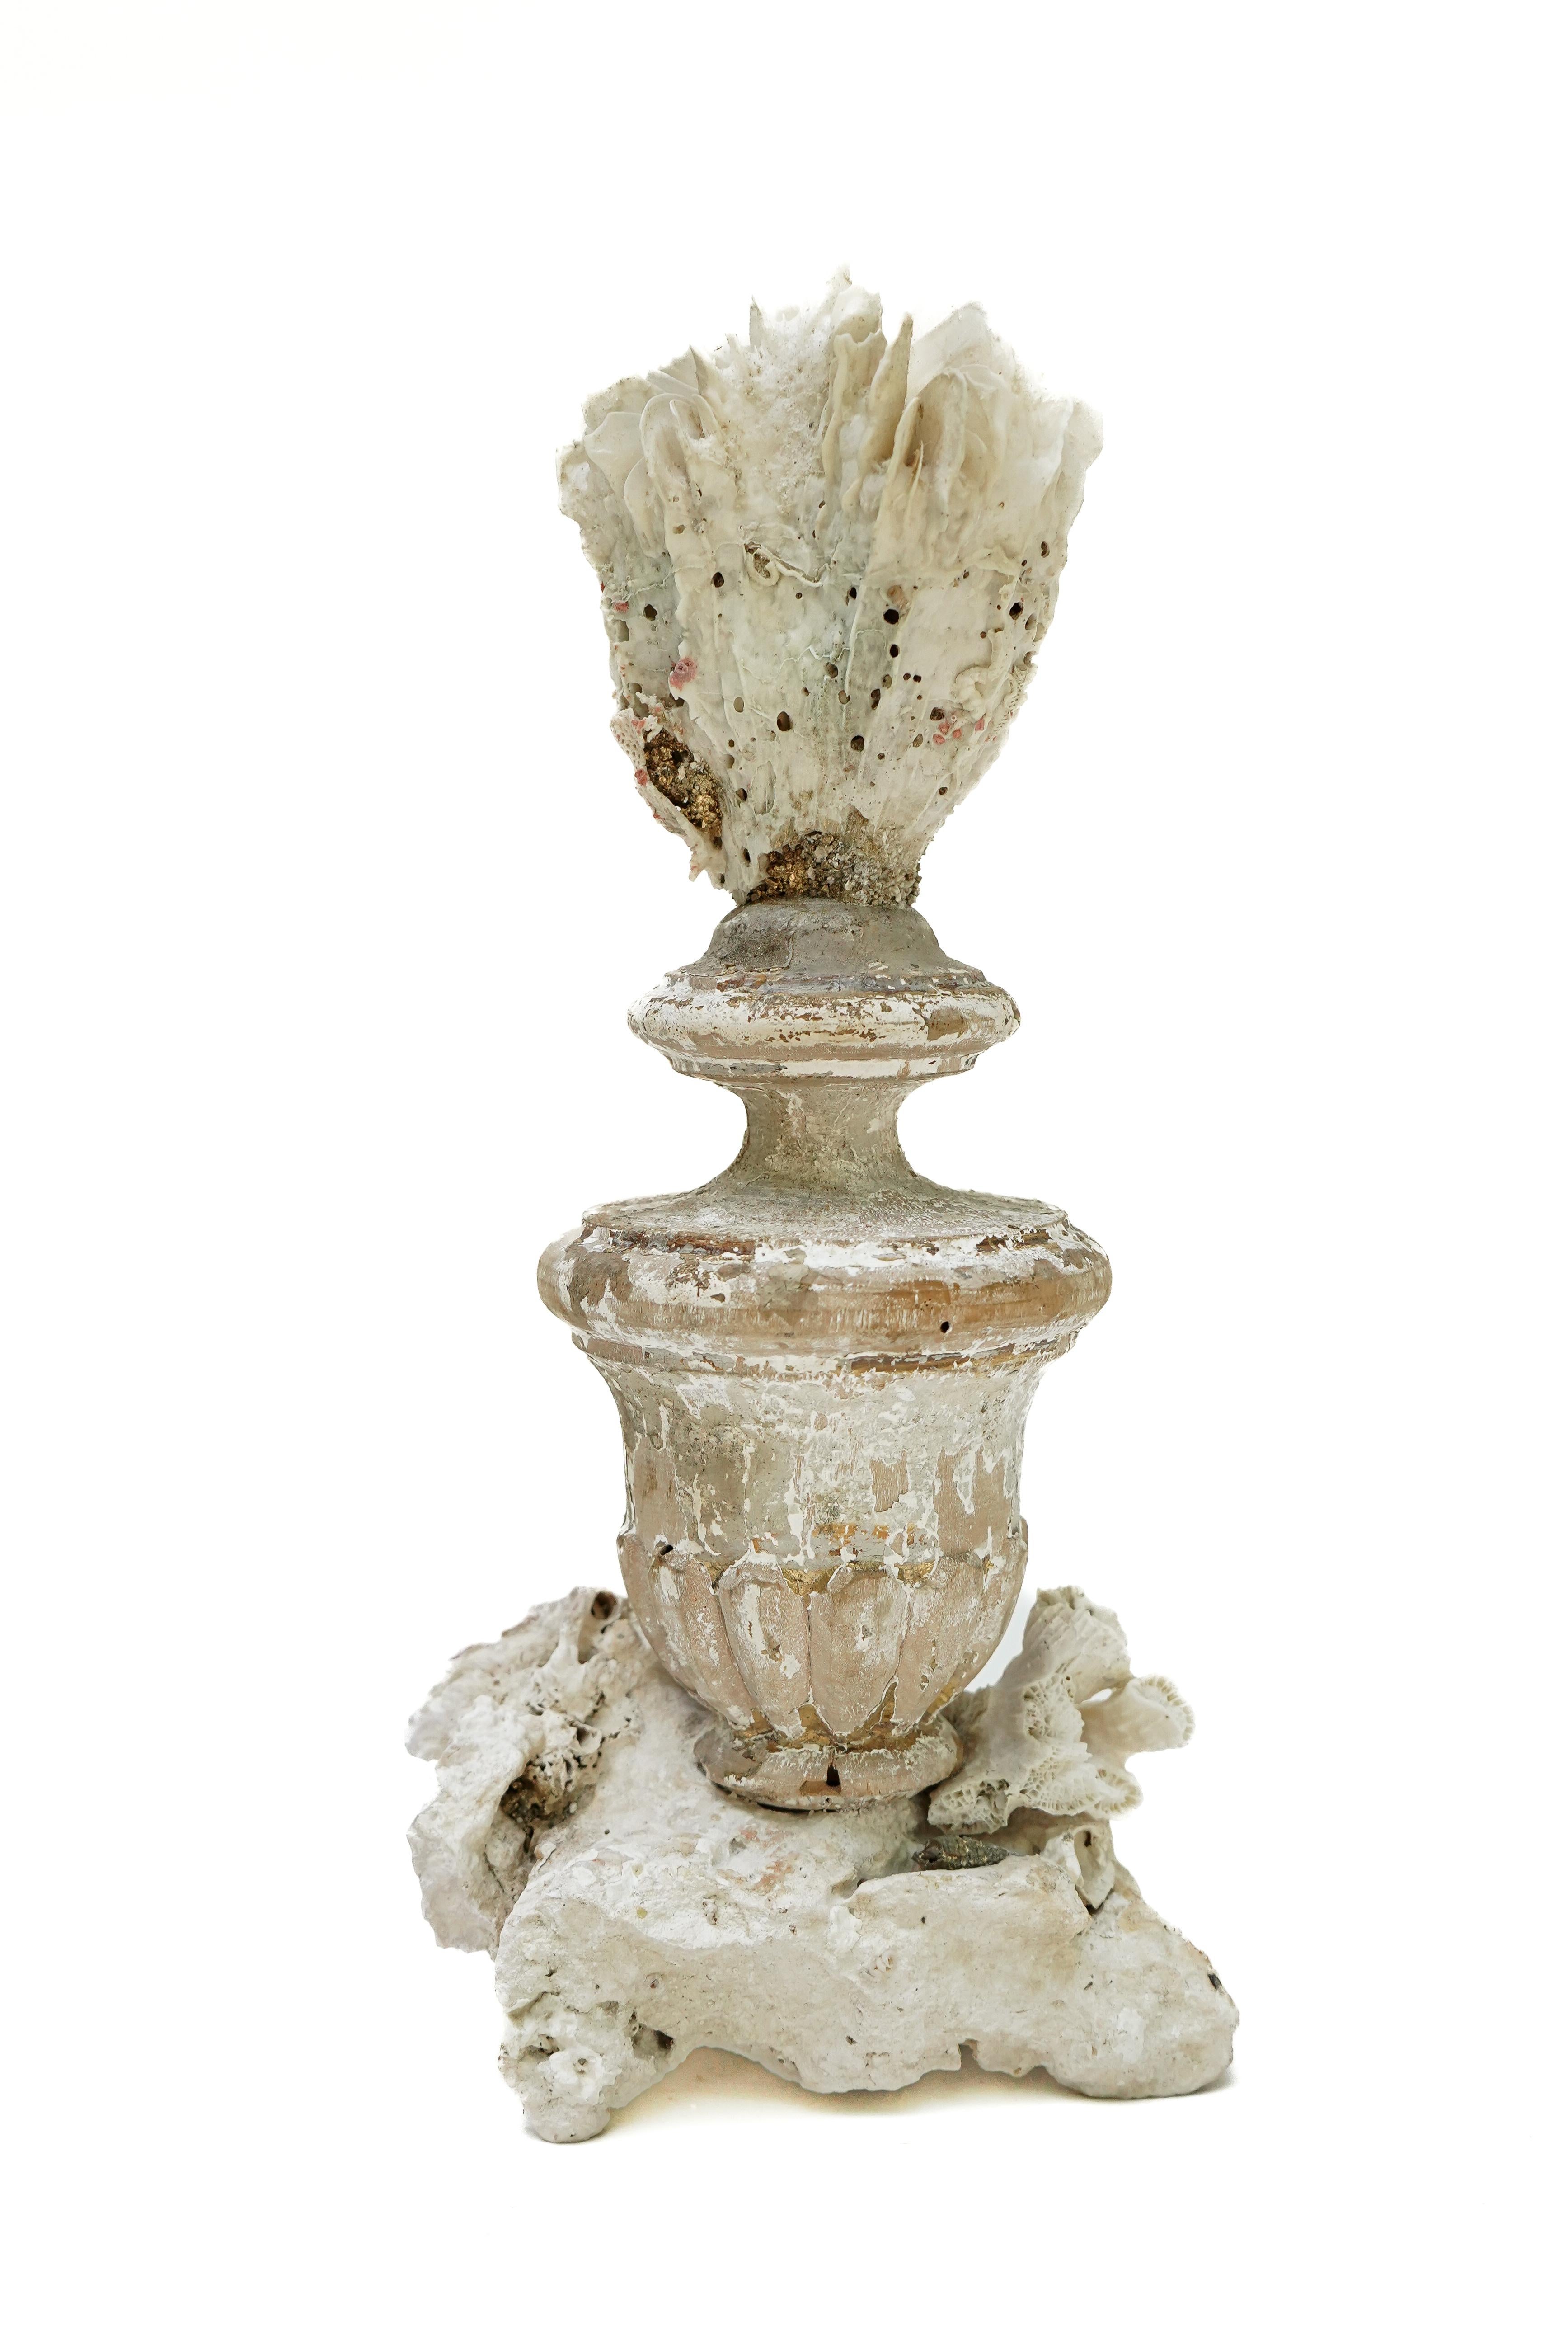 italienische Vase aus dem 17. Jahrhundert mit einem fossilen Korallenkopf auf einem Sockel aus Steinkorallenblüten.

Dieses Fragment stammt aus einer Kirche in Florenz. Es wurde bei der historischen Überschwemmung von Florenz im Jahr 1966 gefunden